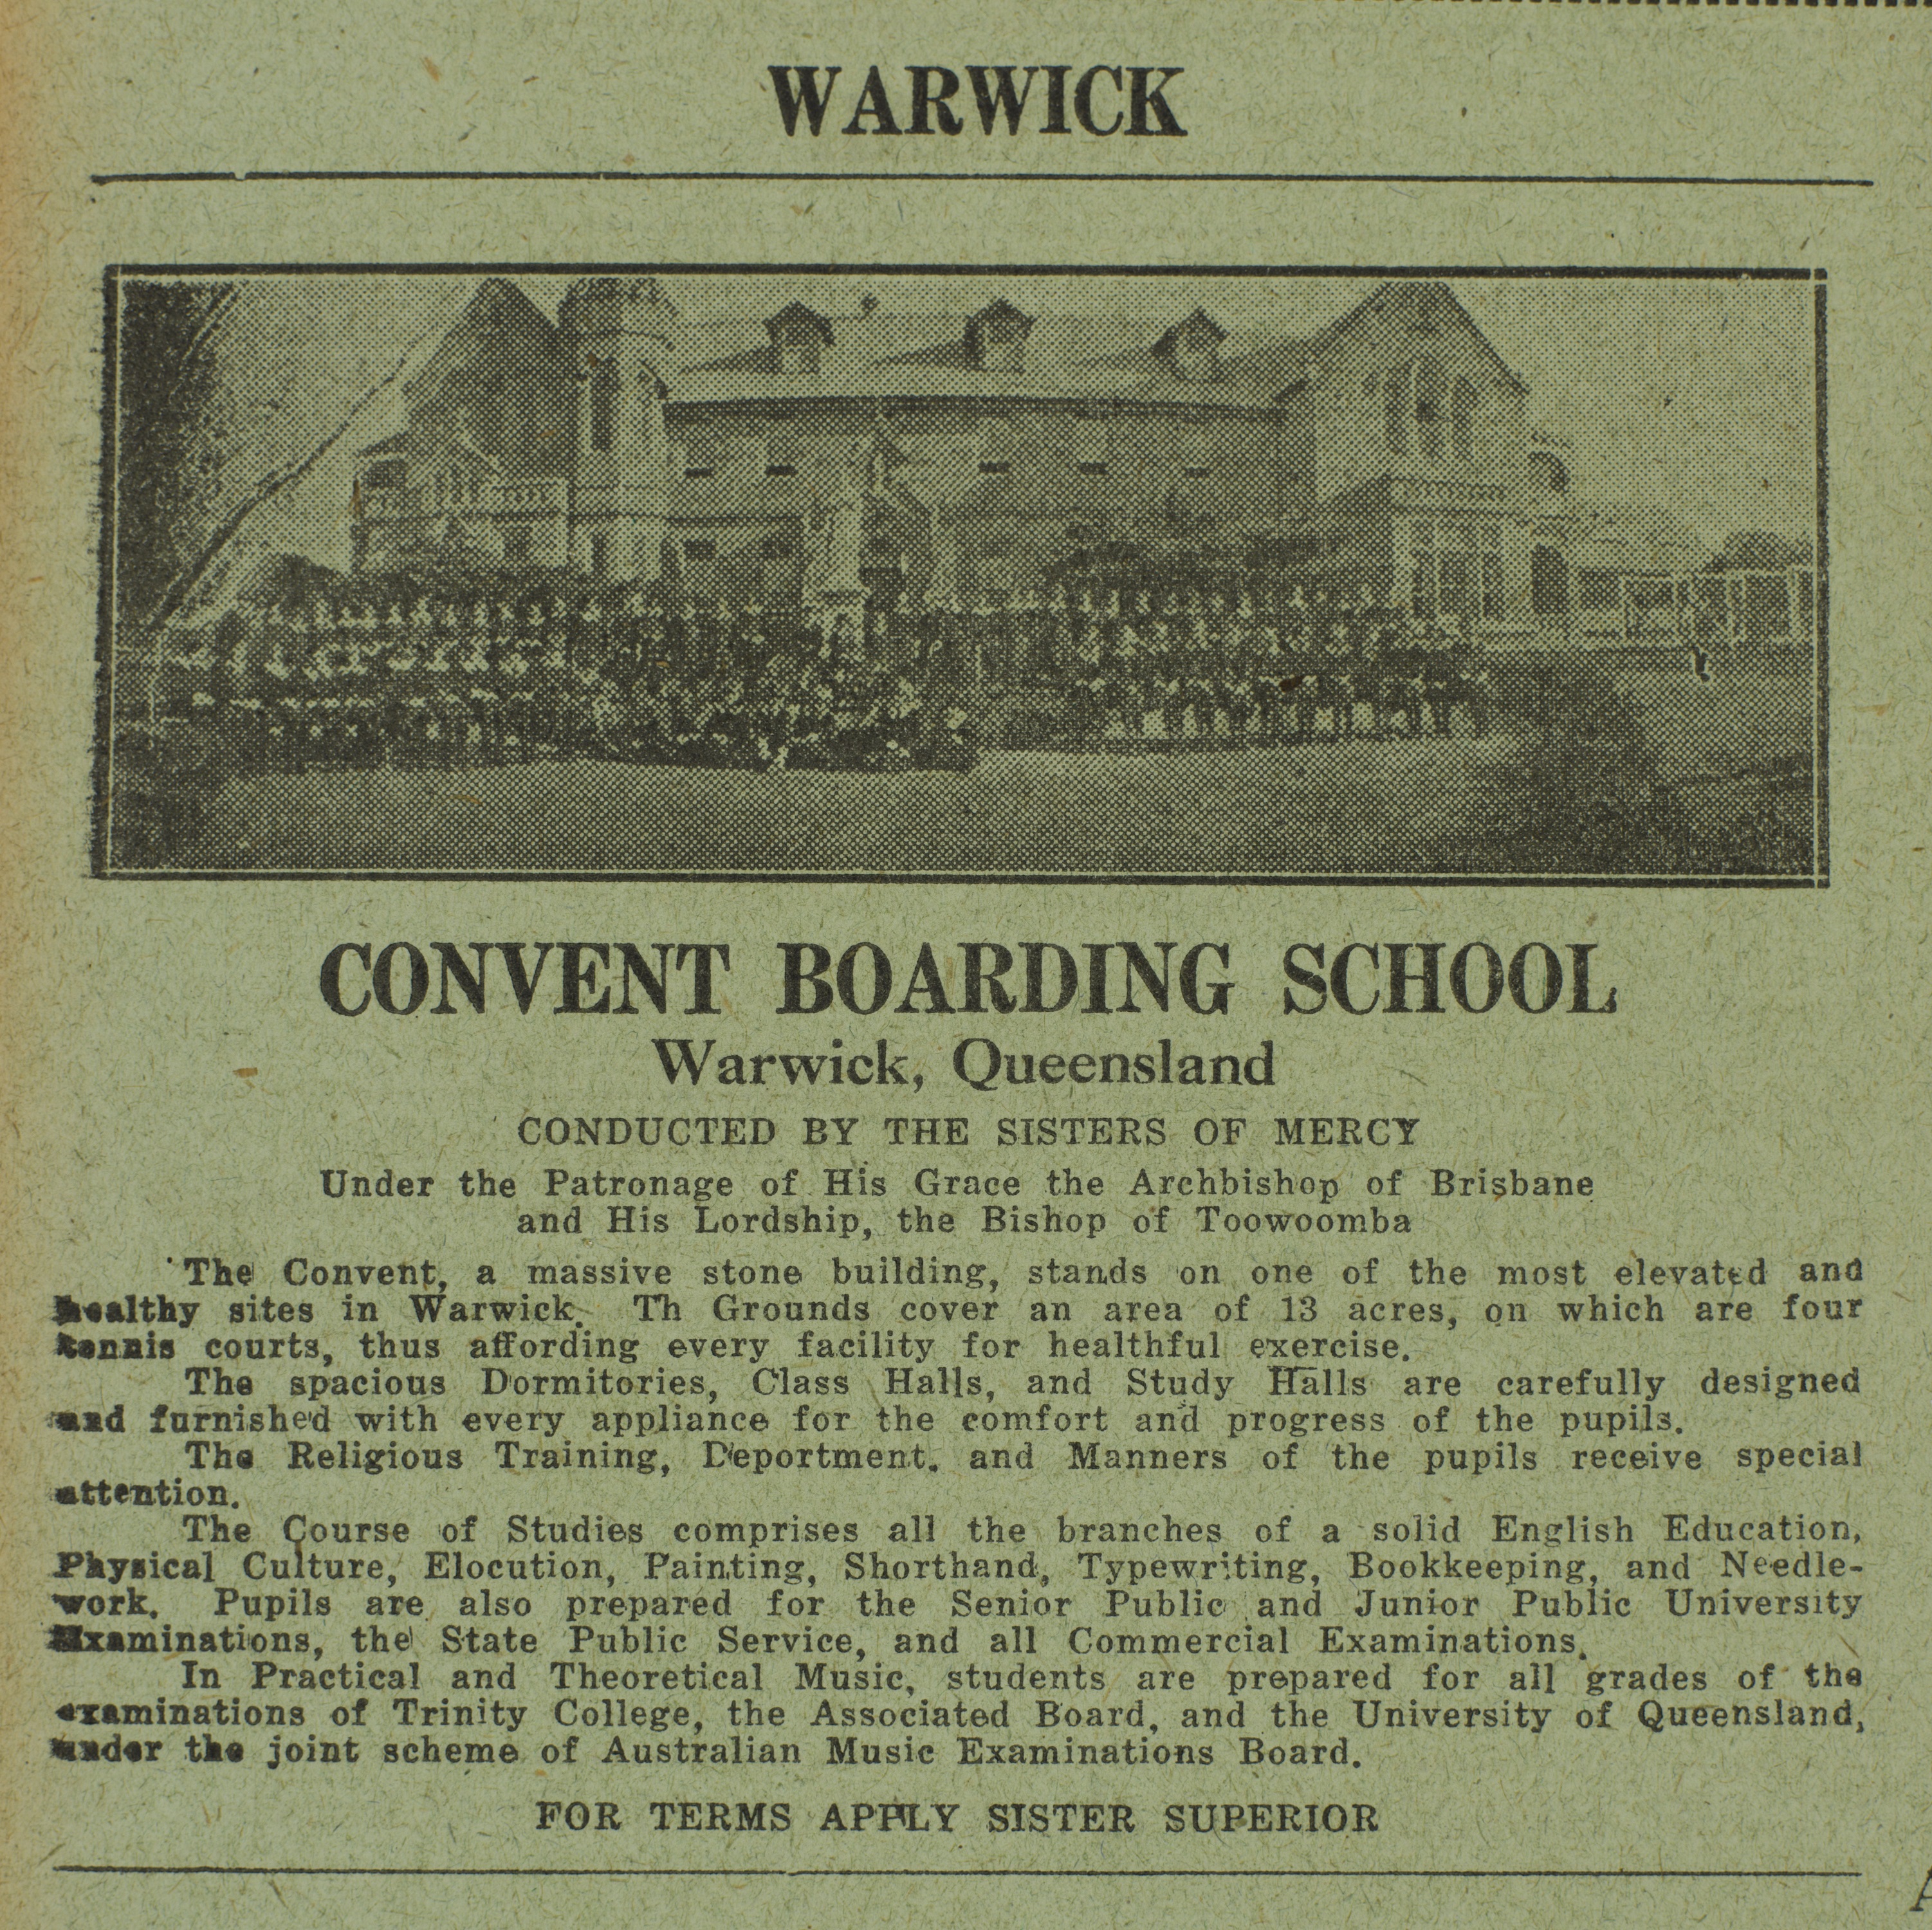 Convent boarding school advertisement Warwick, Queensland 